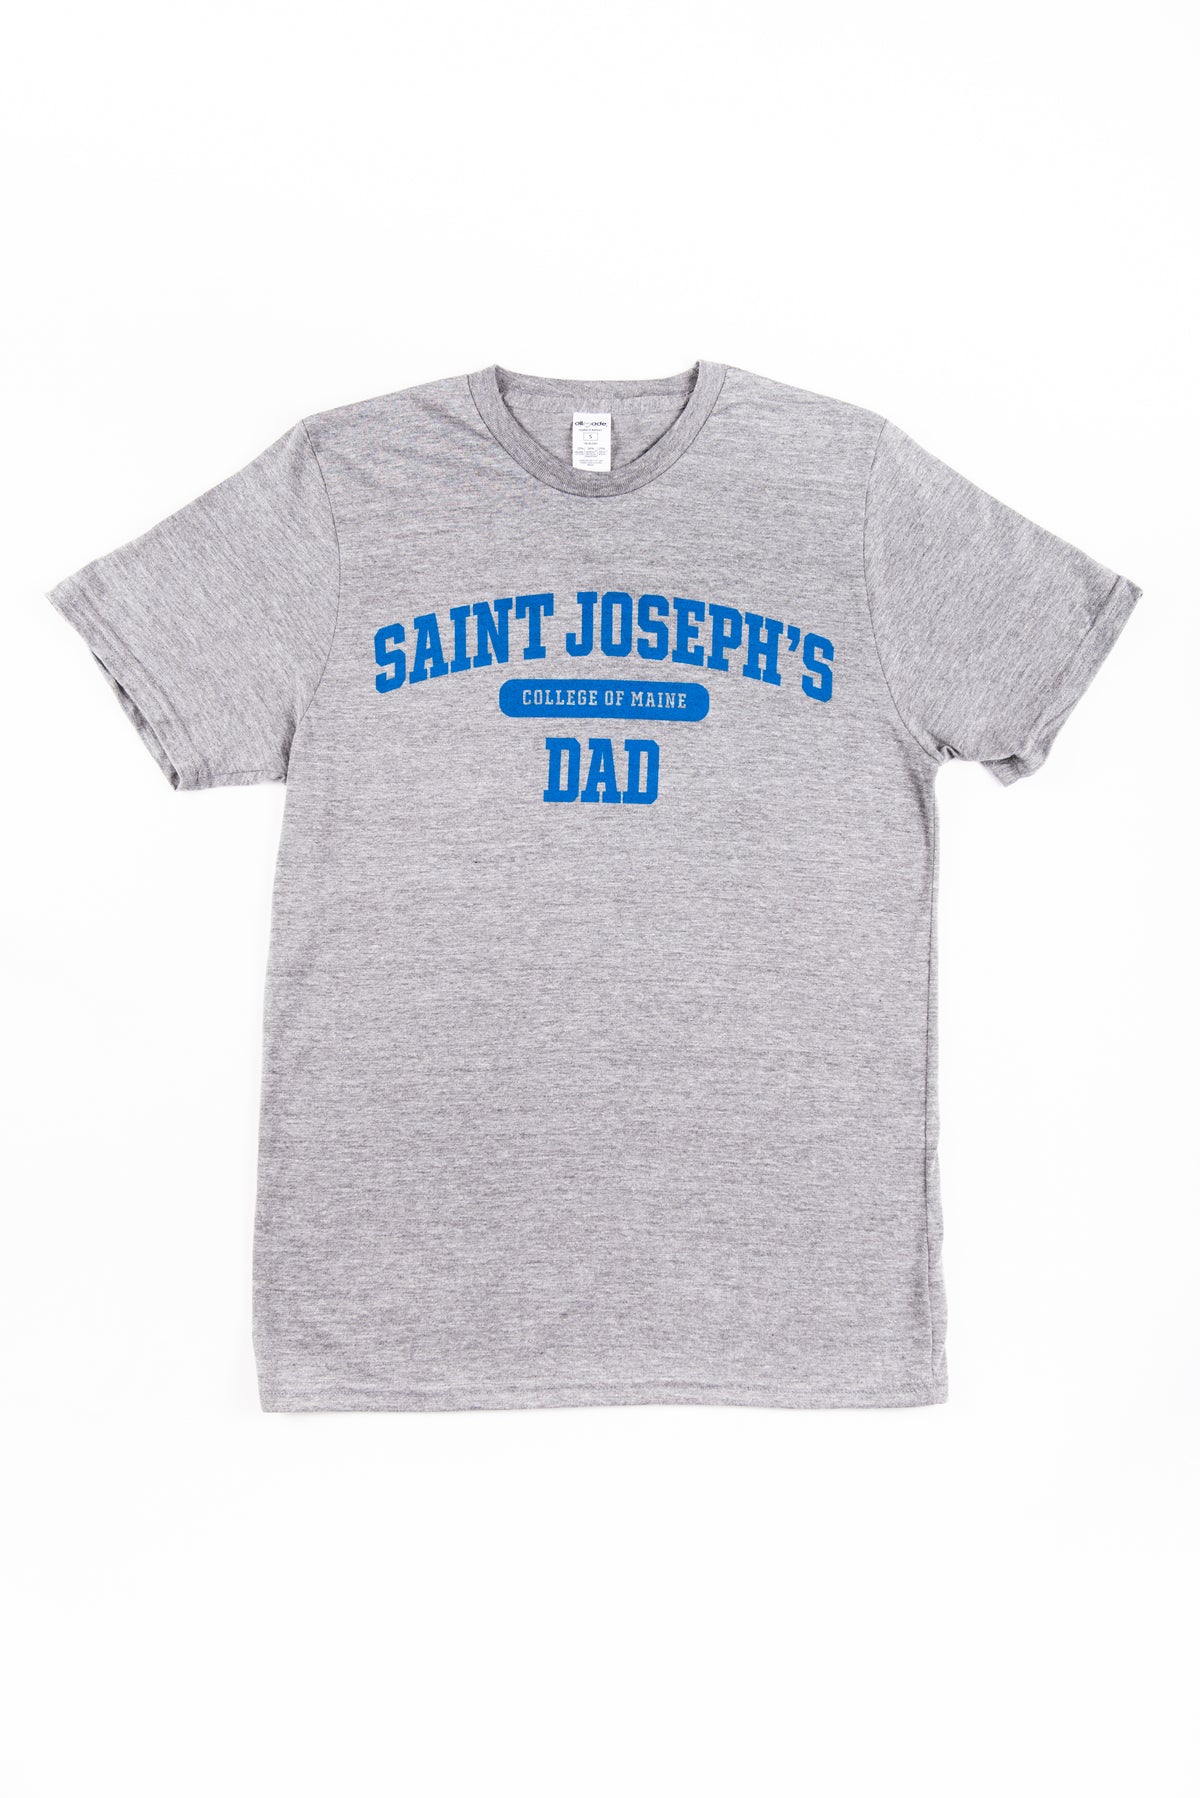 Grey SJC Dad Shirt